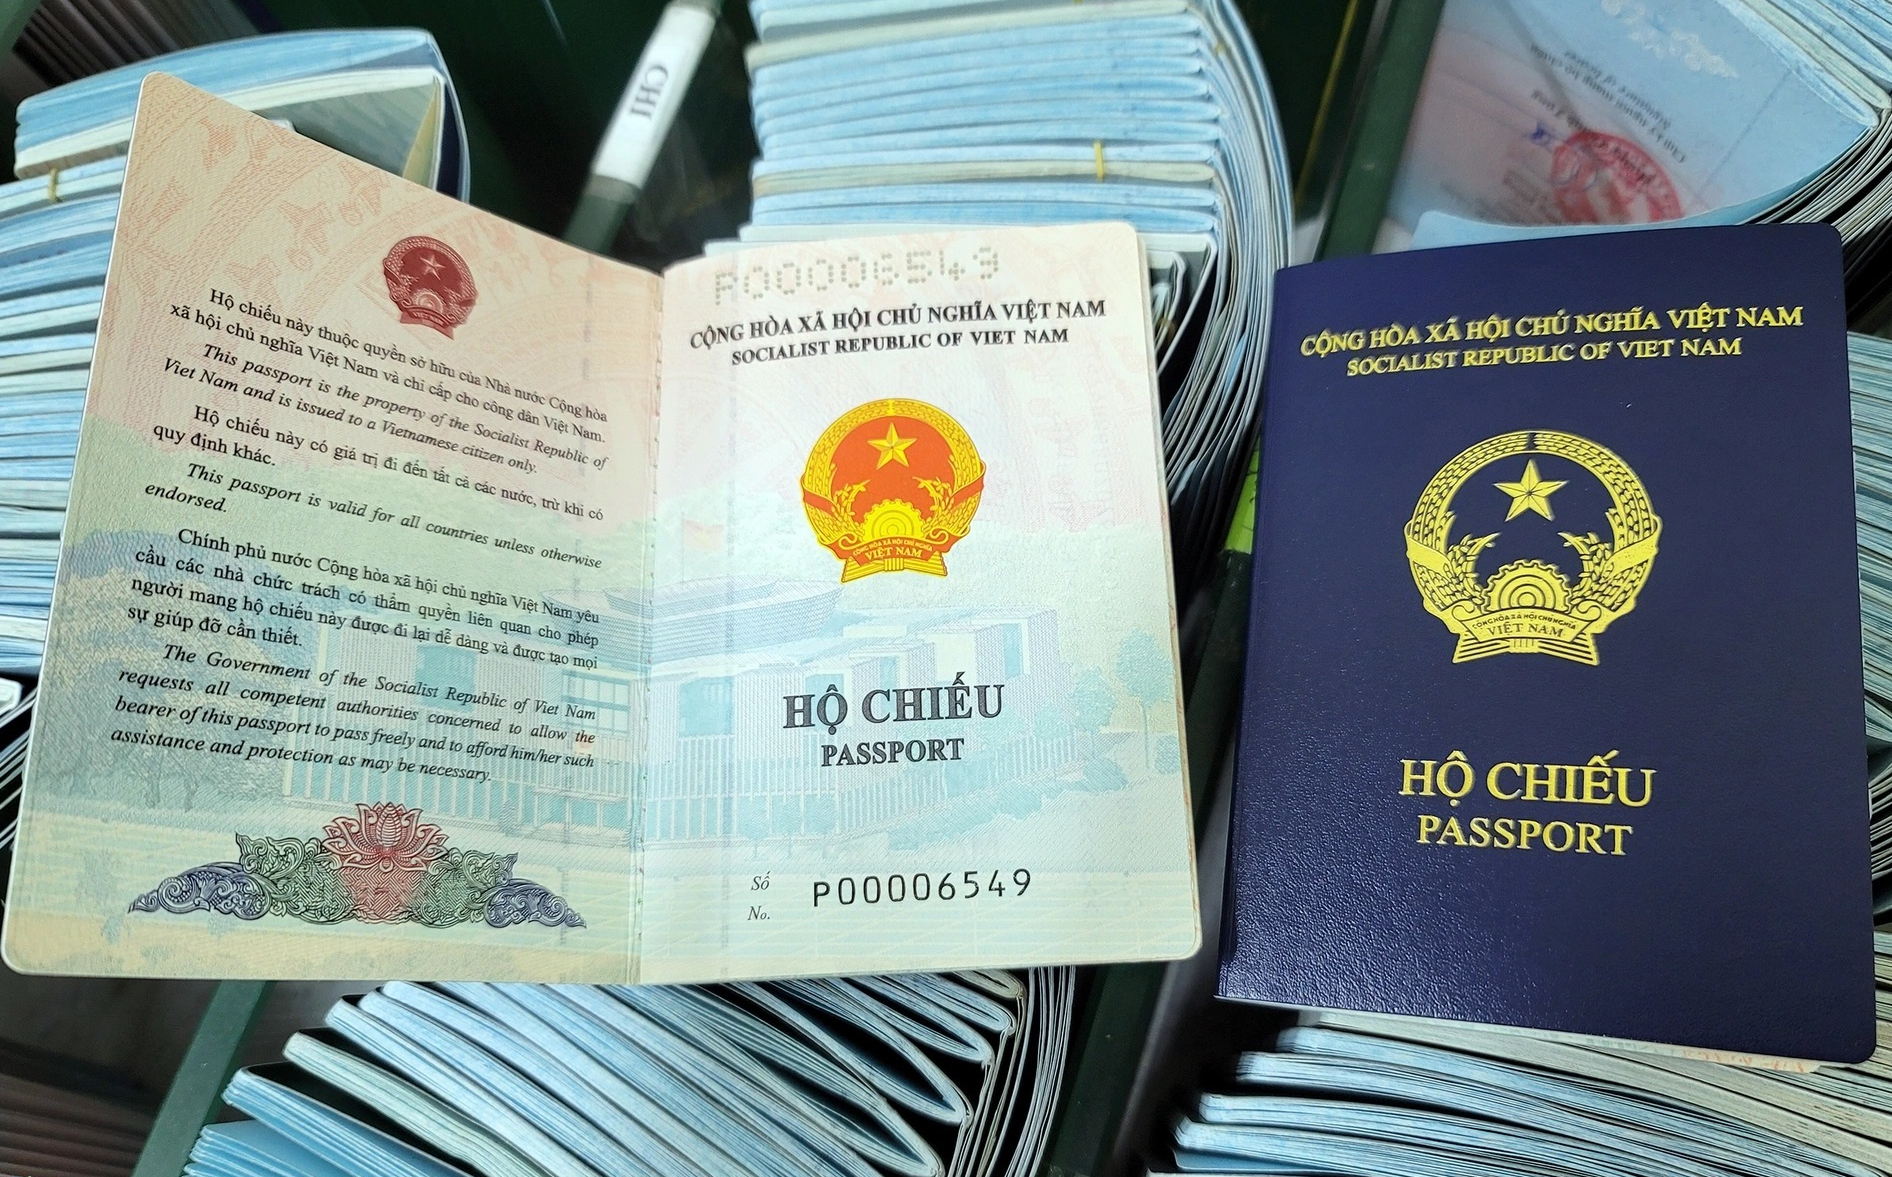 Mẫu hộ chiếu mới luôn được cập nhật và cải tiến để mang lại trải nghiệm tốt nhất cho du khách. Hãy xem ngay các mẫu hộ chiếu mới nhất bằng cách lướt qua các hình ảnh liên quan.